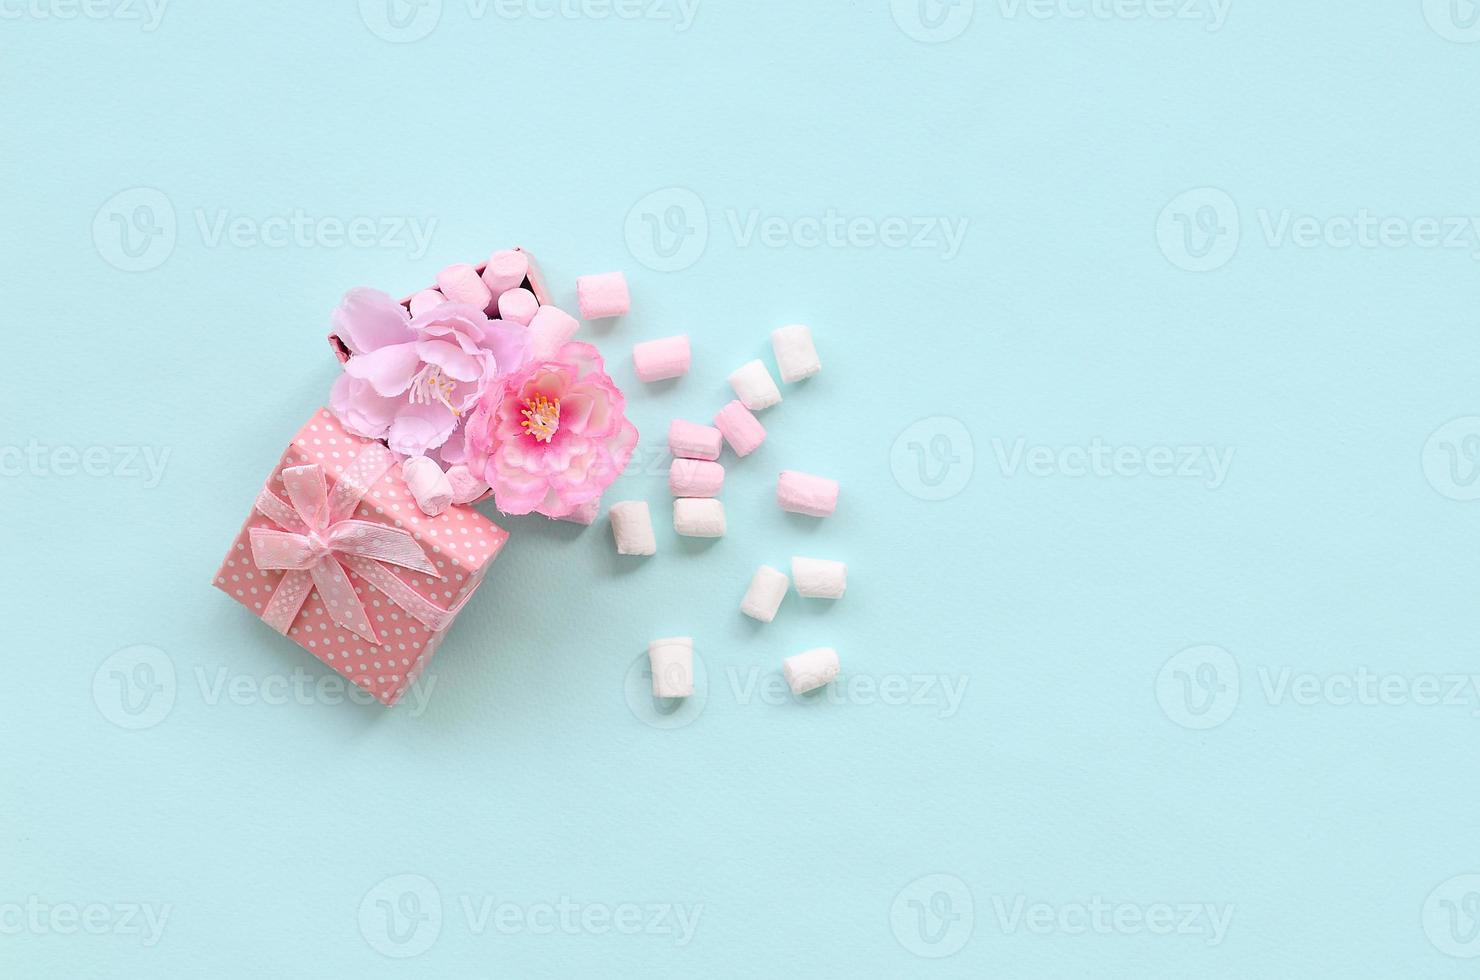 bloemrijke roze geschenkdoos besprenkeld met marshmallows op blauwe achtergrond foto